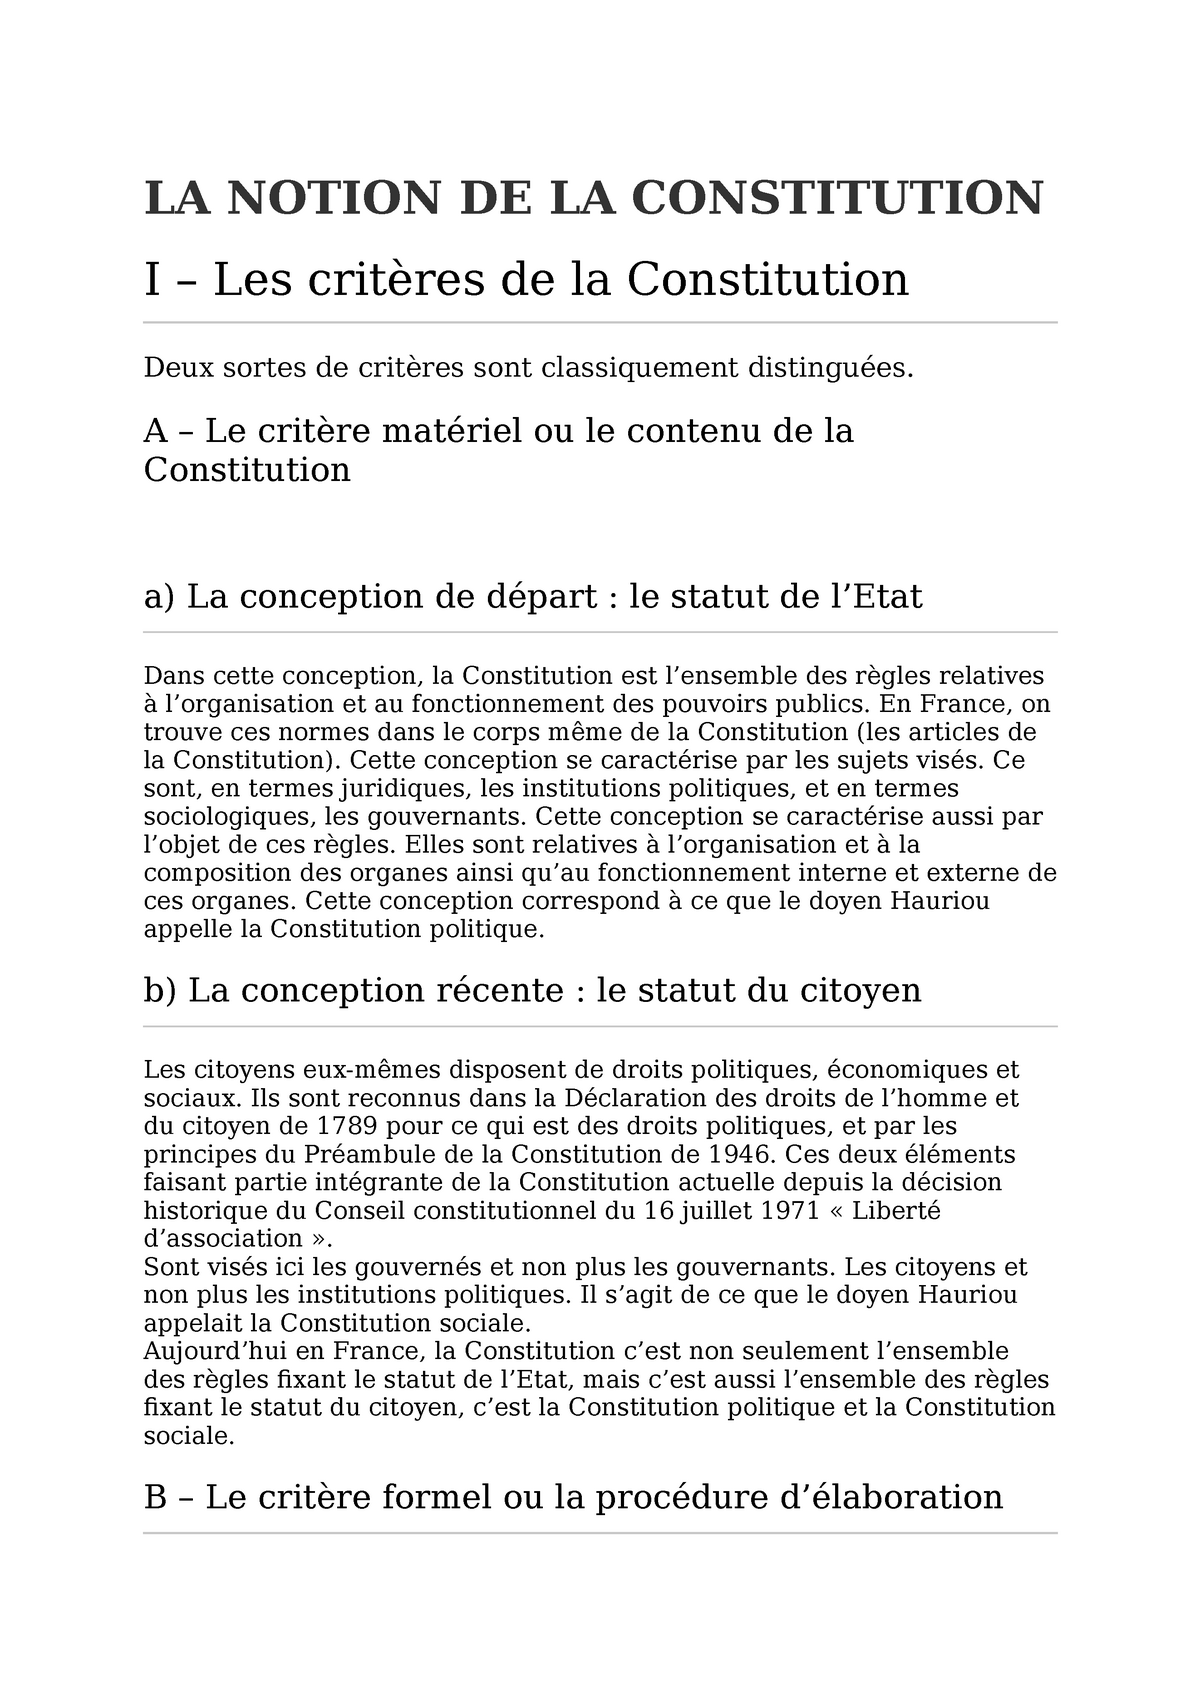 la notion de la constitution dissertation juridique